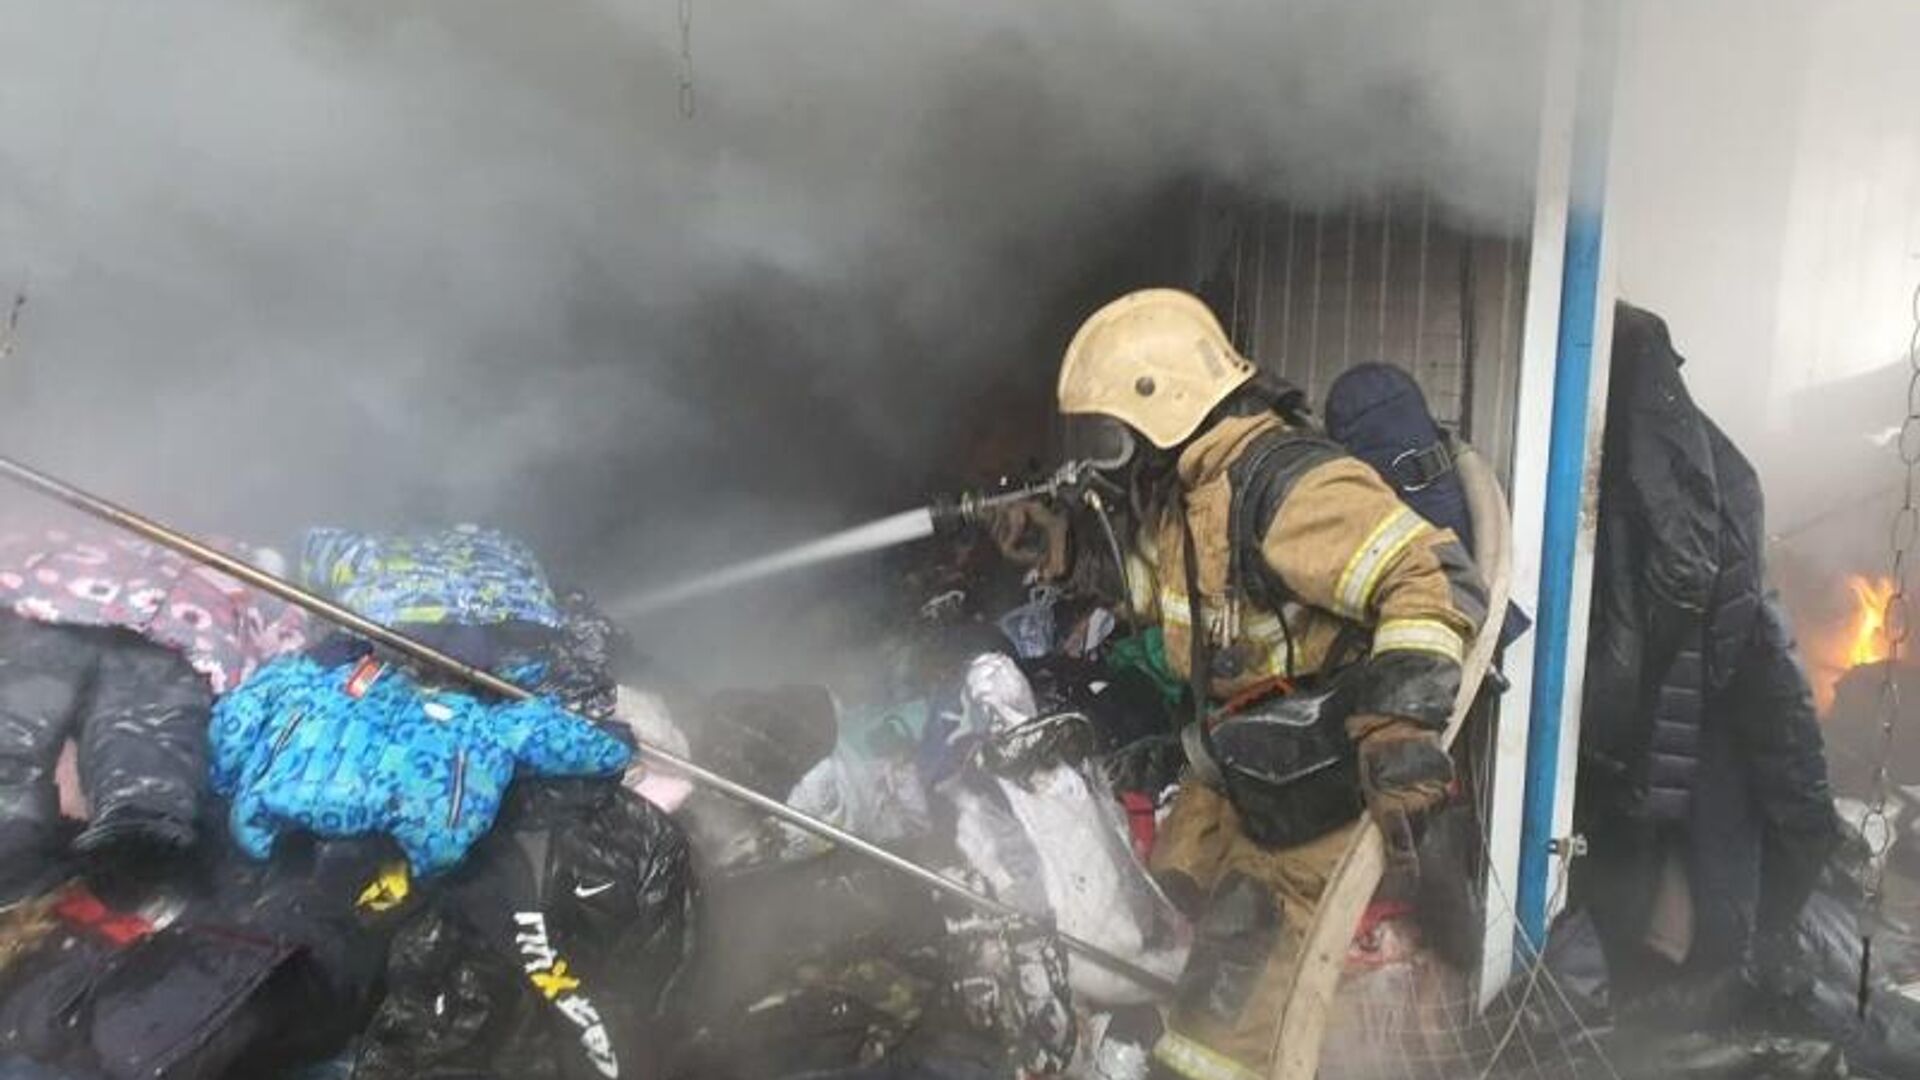 Рынок после пожара. Пожар на рынке в Волгограде. Пожар в Волгограде сегодня в Дзержинском районе Качинский рынок. Пожар на вещевом рынке. Пожар в Волгограде сейчас.